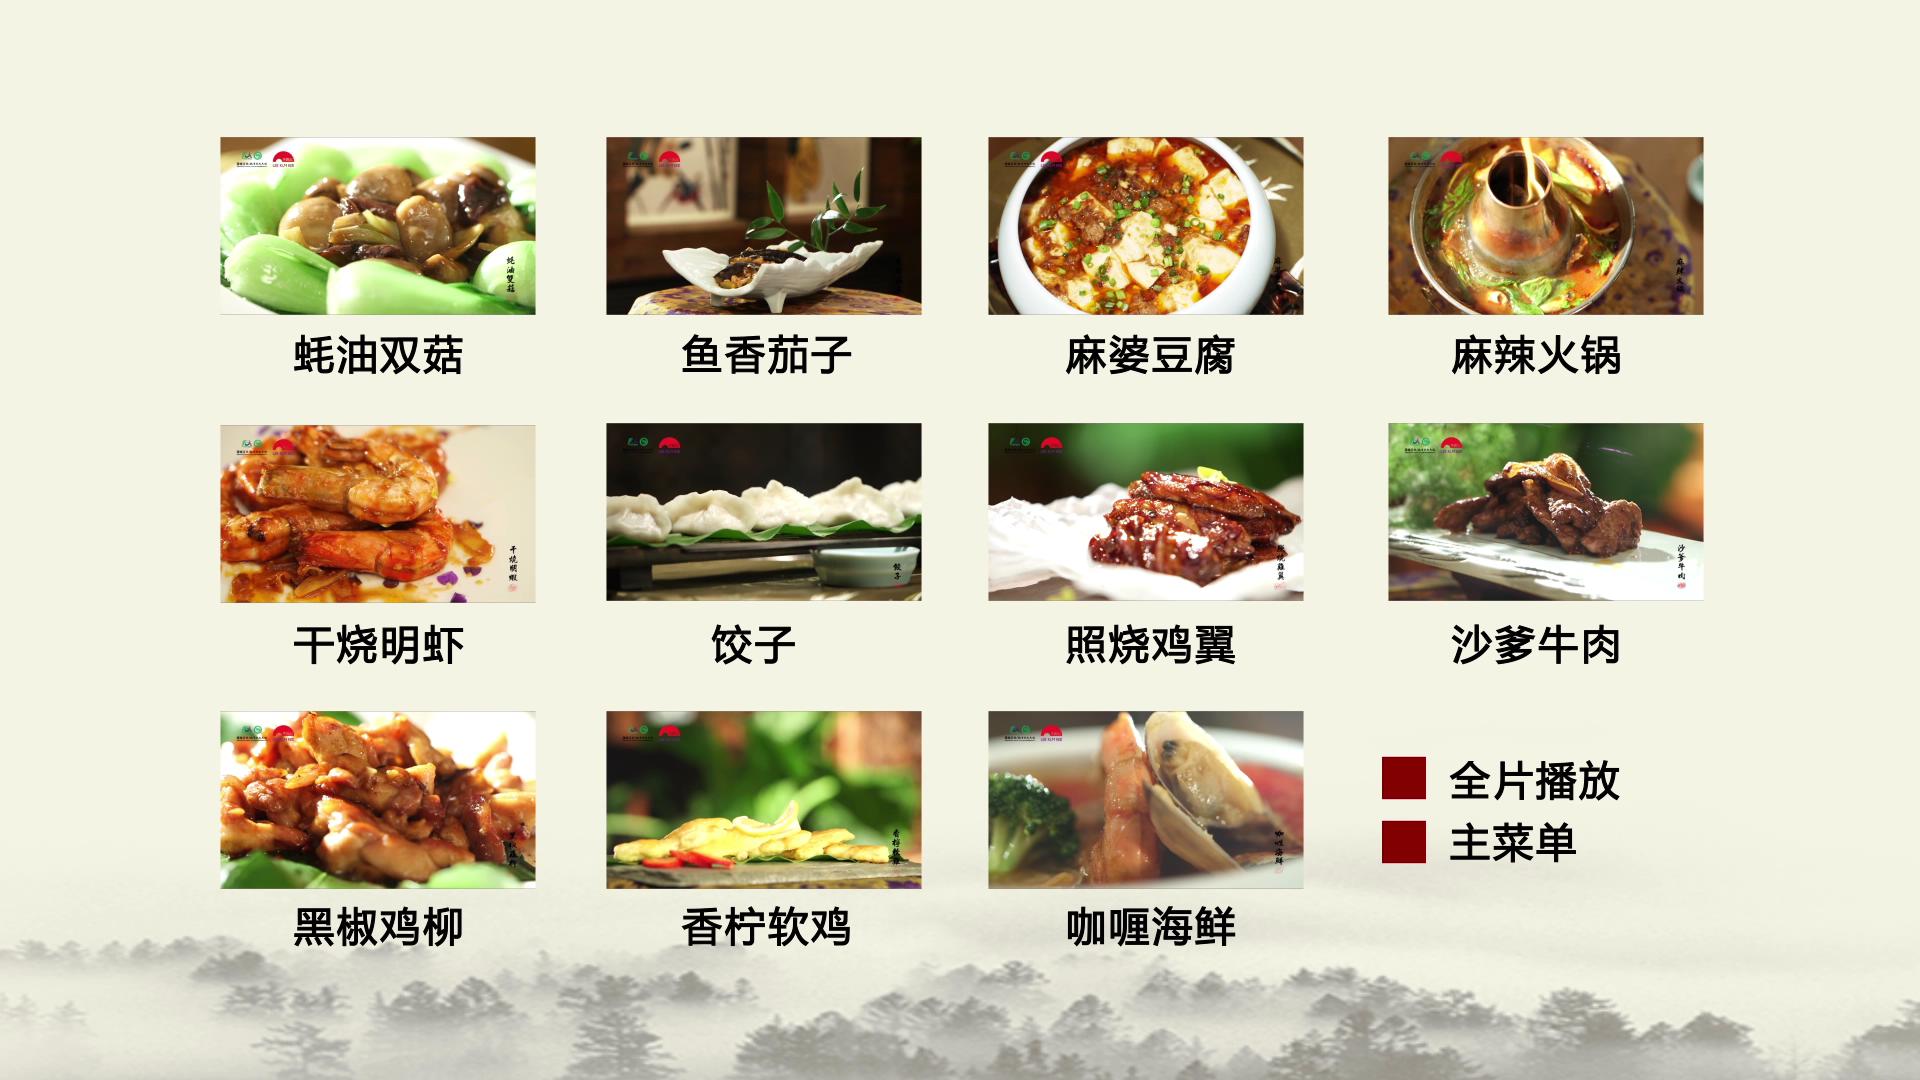 中文菜单_2014330215342.JPG